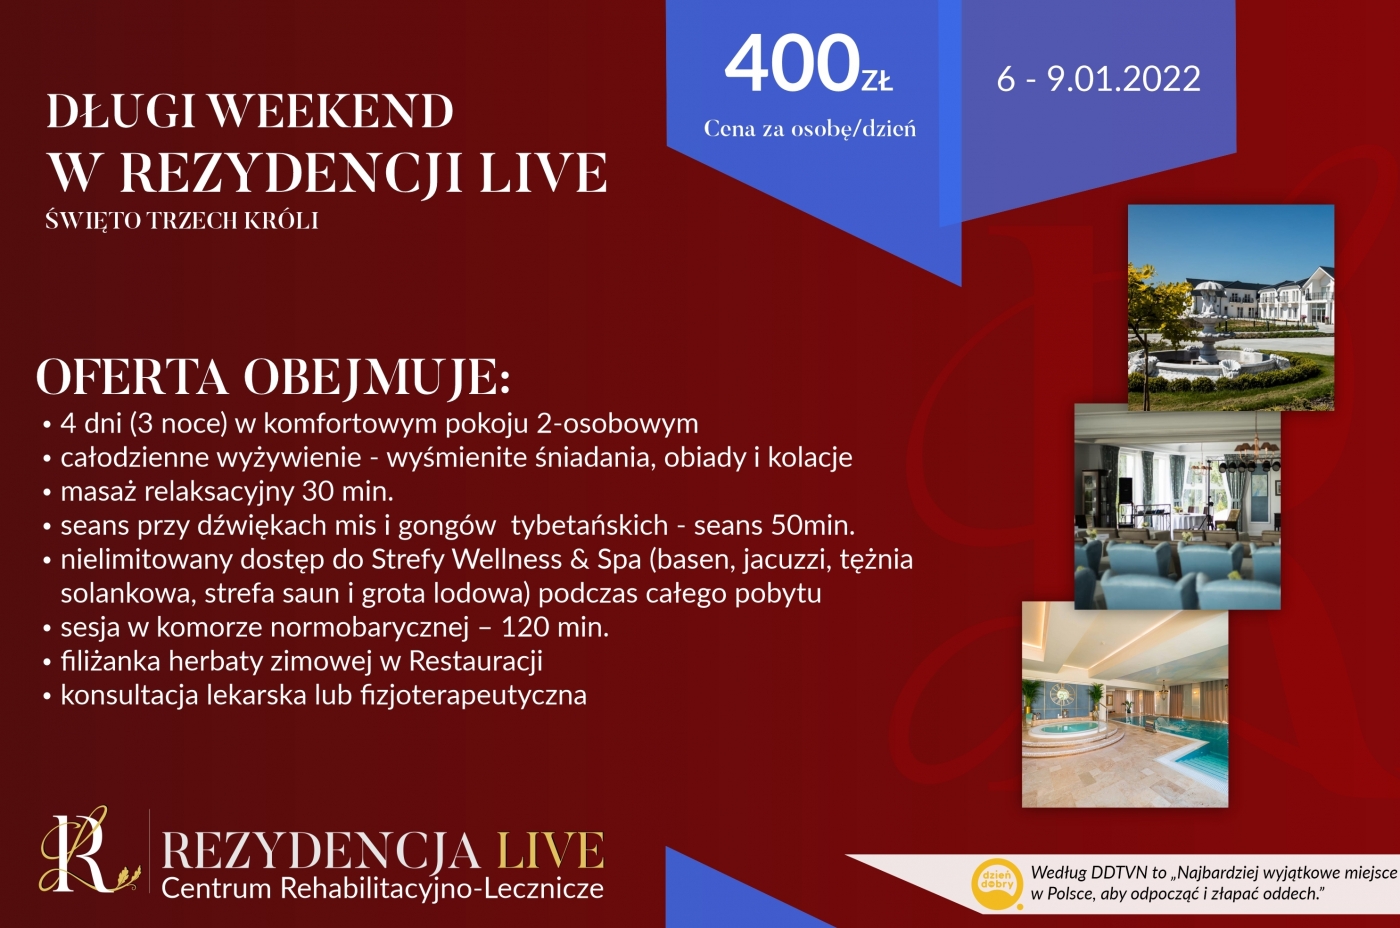 Oferta Długi Weekend w Rezydencji Live - 06-09.01.2022